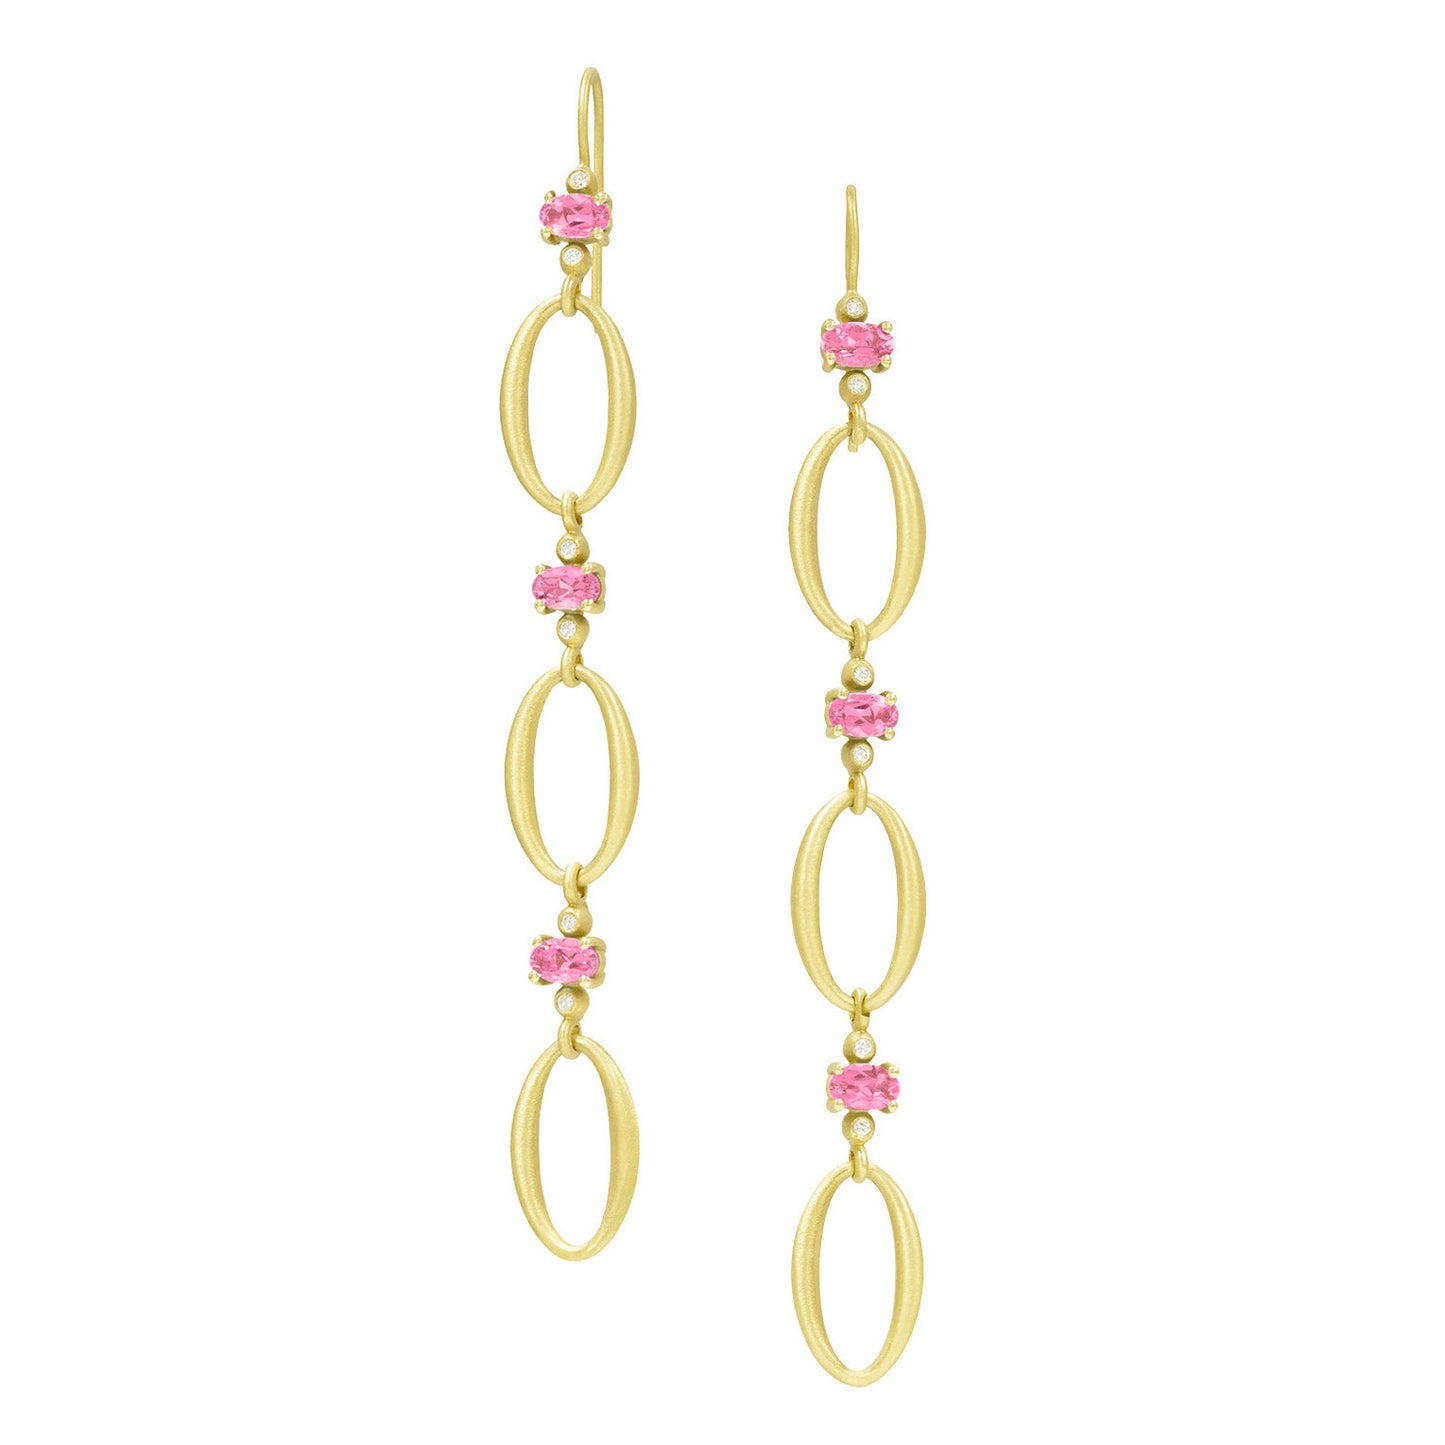 Oval Link Earrings - Pink Tourmaline